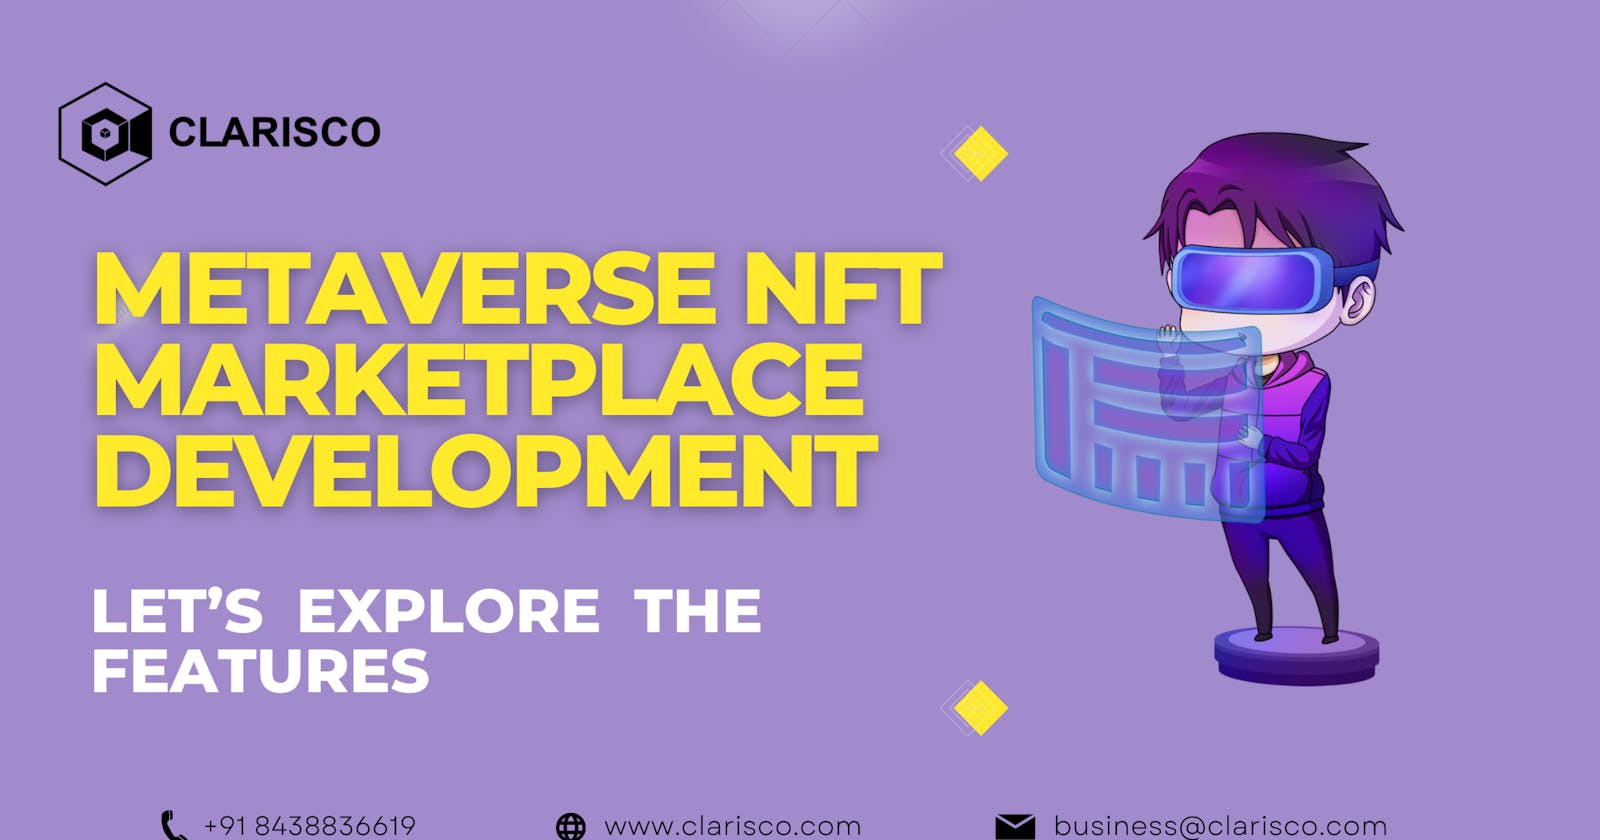 Metaverse NFT Marketplace Development - Let’s Explore the Features: